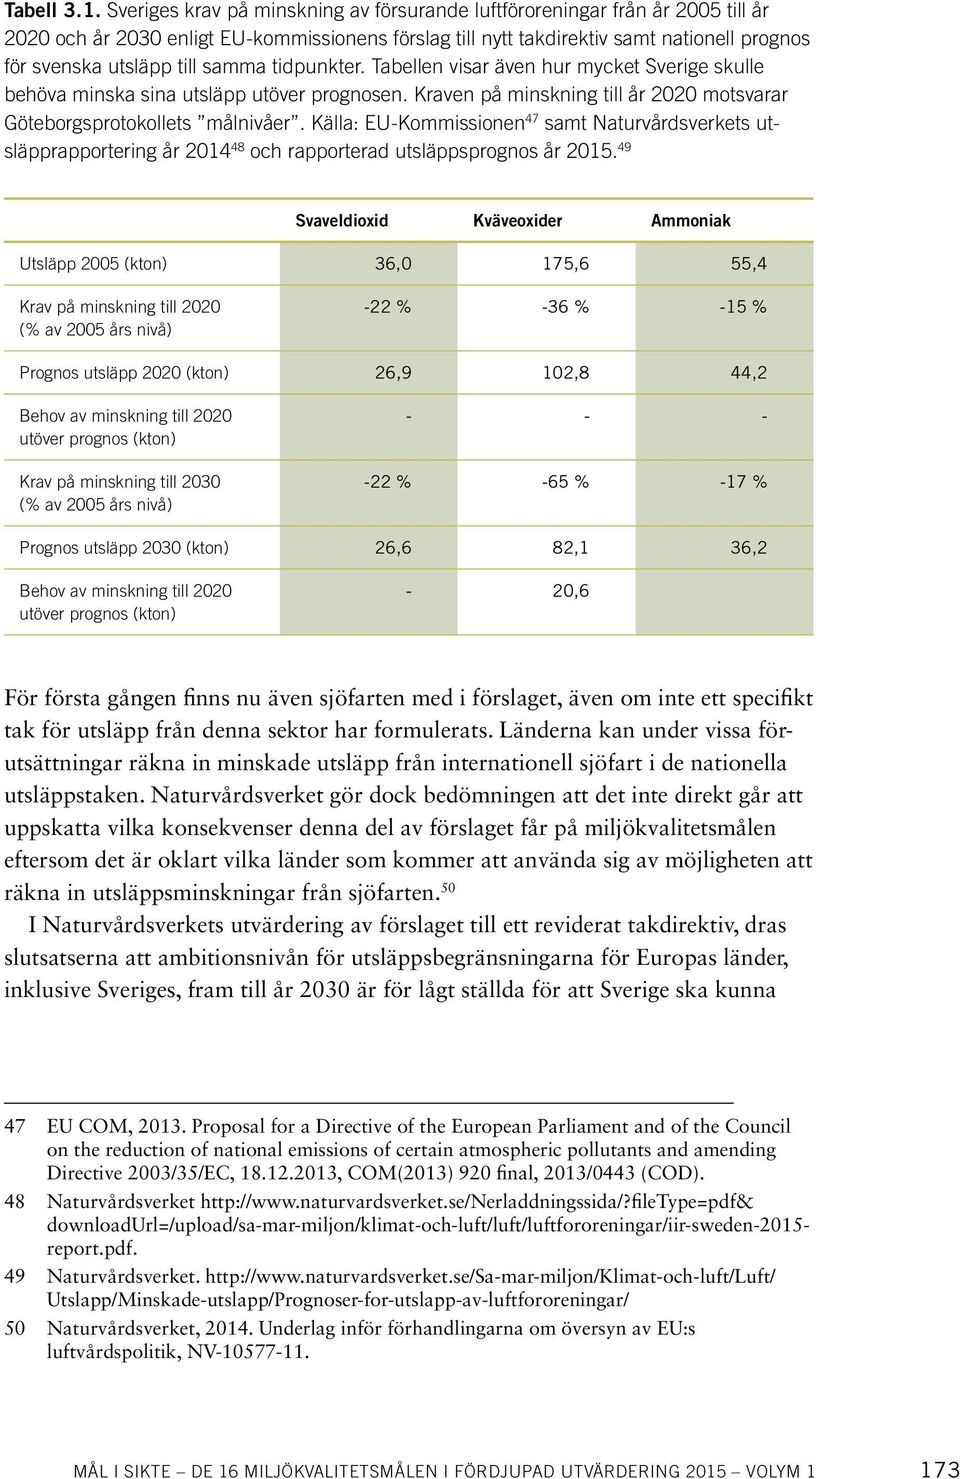 samma tidpunkter. Tabellen visar även hur mycket Sverige skulle behöva minska sina utsläpp utöver prognosen. Kraven på minskning till år 2020 motsvarar Göteborgsprotokollets målnivåer.